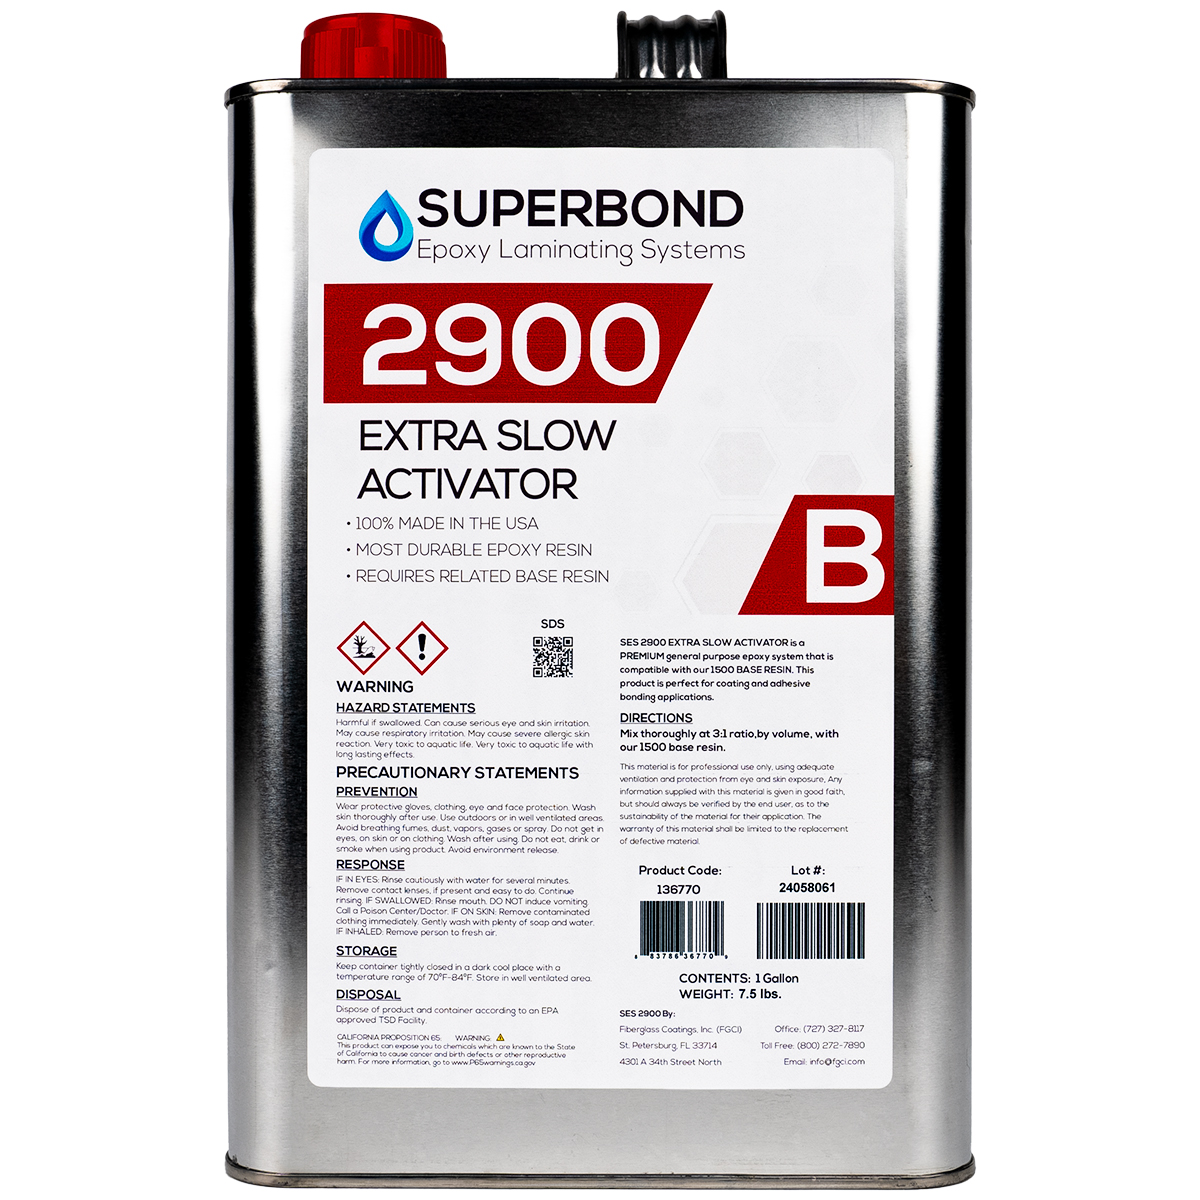 Superbond Epoxy Laminating System - 2900 Extra Slow Activator